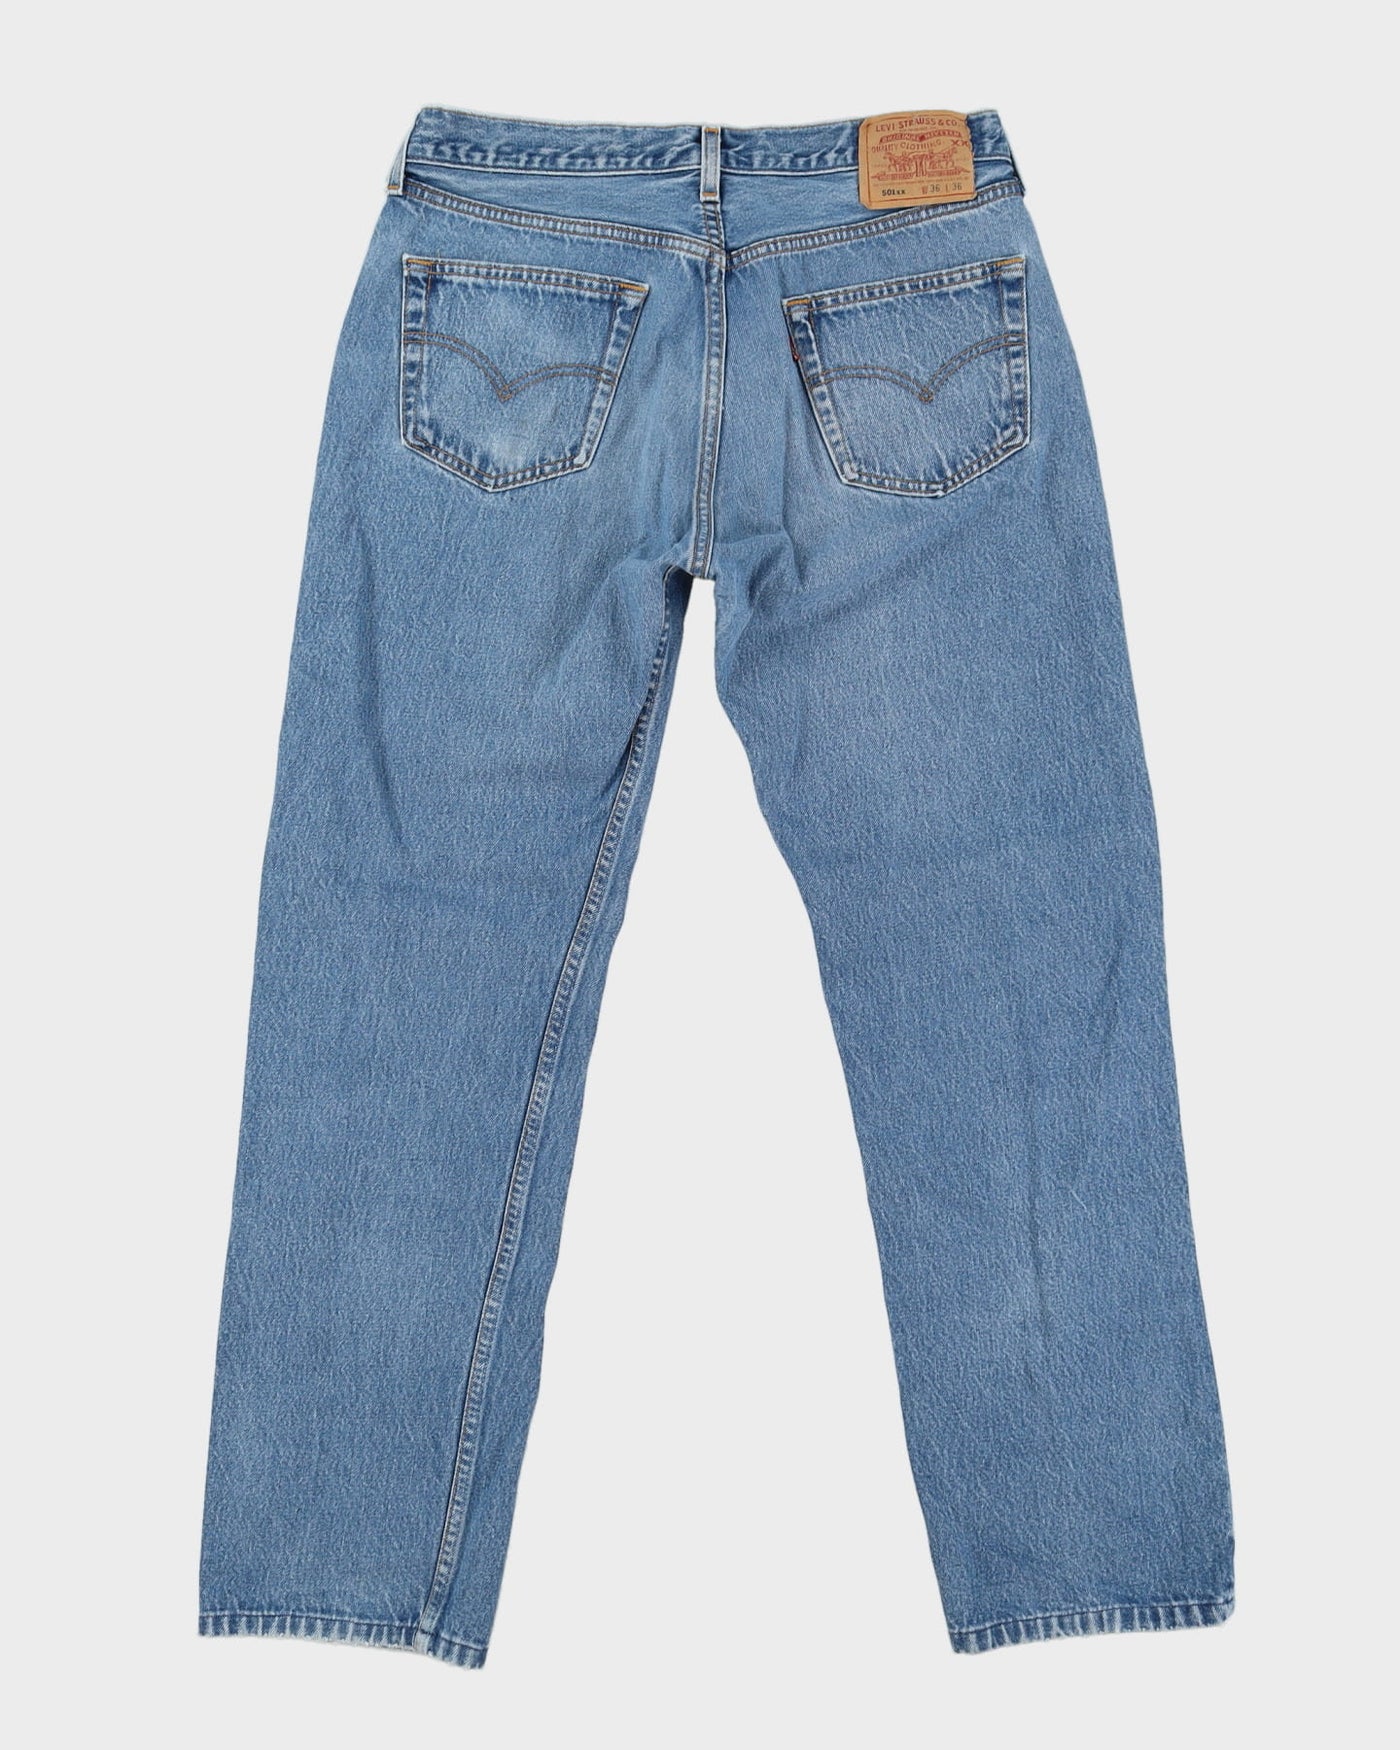 Vintage 90s Levi's 501 Medium Wash Jeans - W33 L30